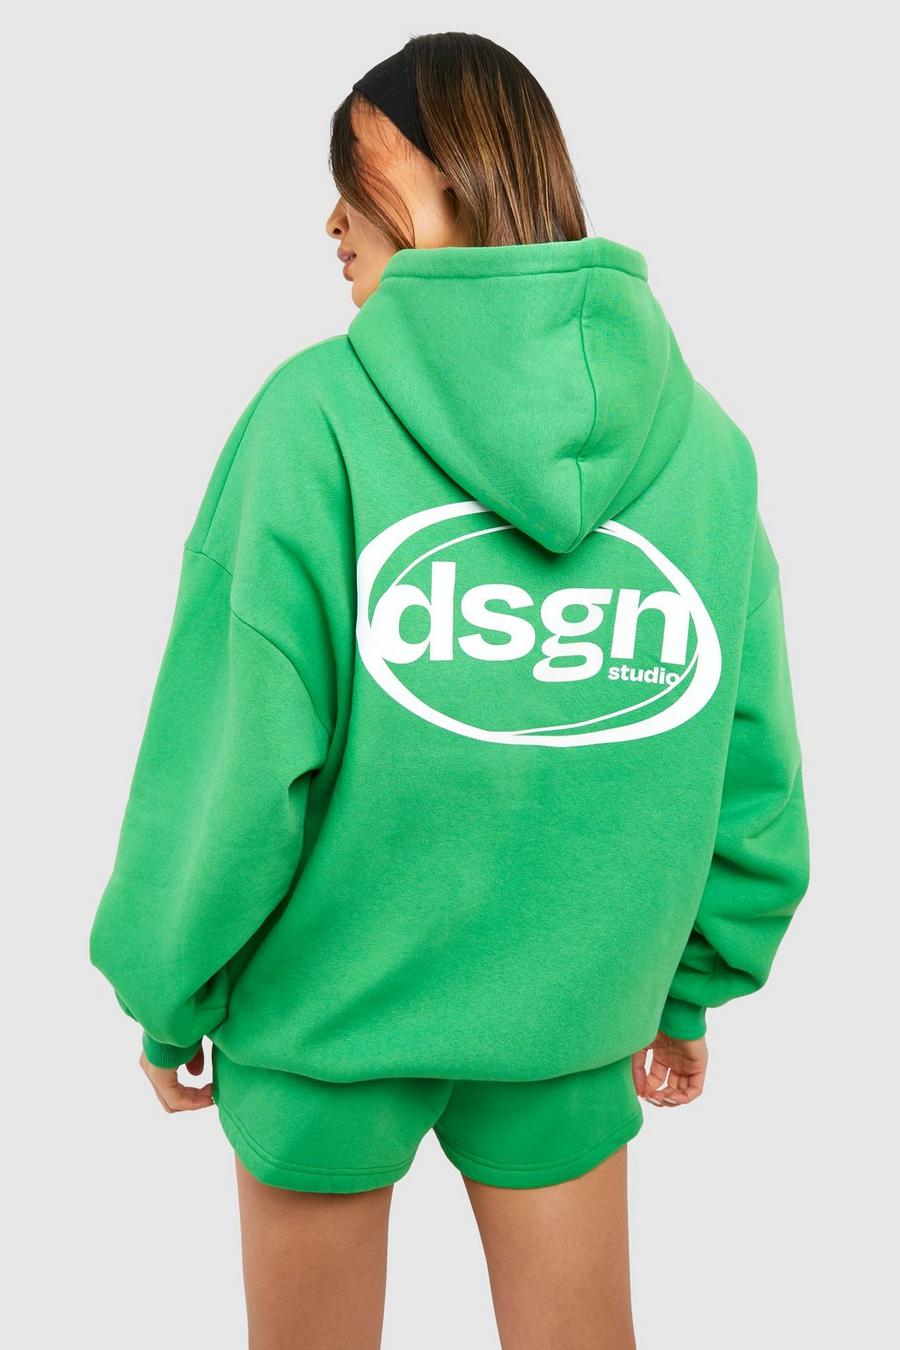 Kurzer Trainingsanzug mit Dsgn Studio Slogan und Kapuze, Green